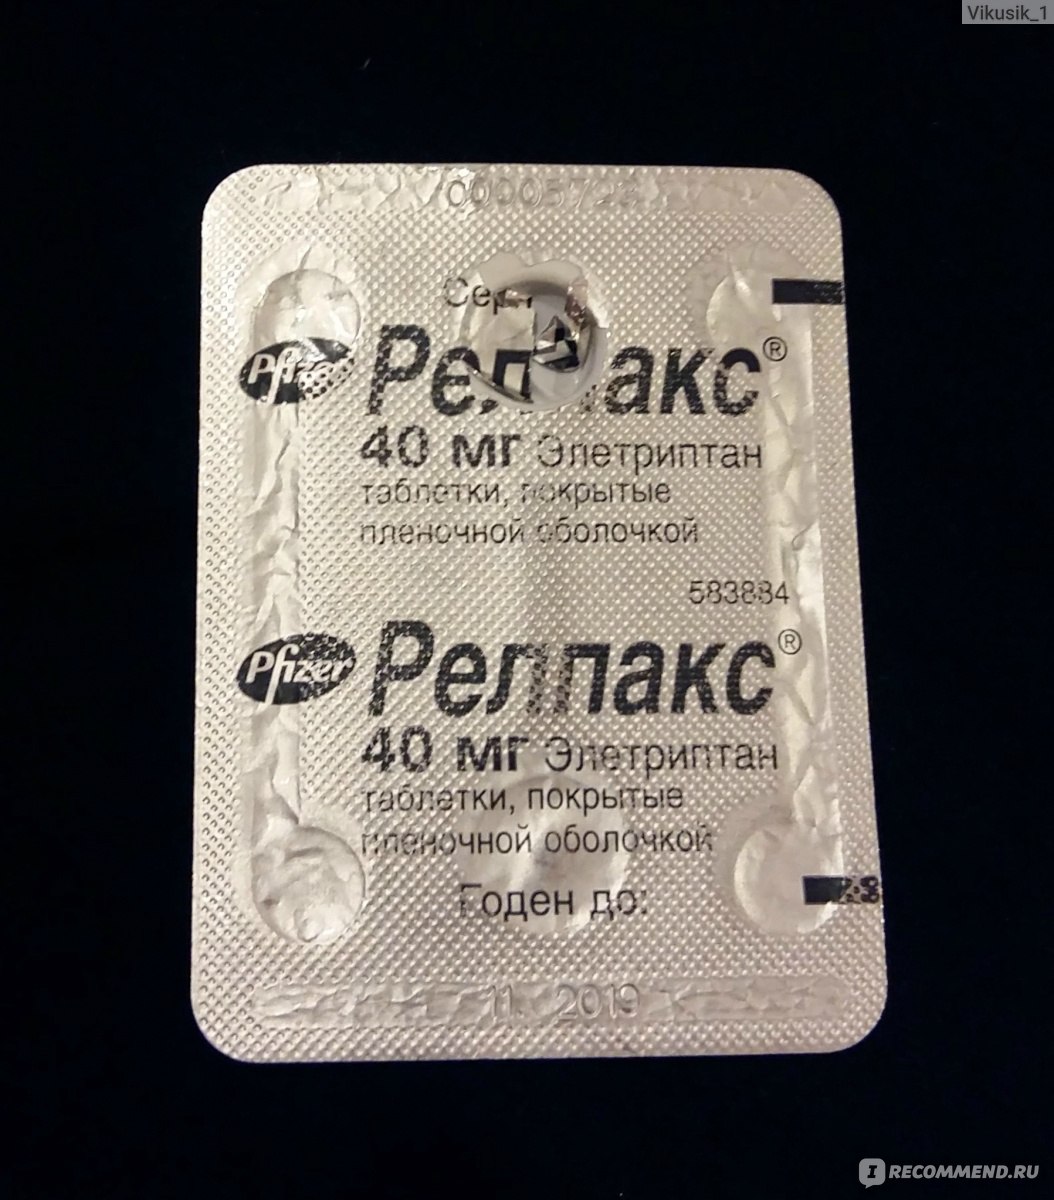 Болеутоляющие средства Pfizer Релпакс (элетриптан) 40 мг - «Как я чуть .